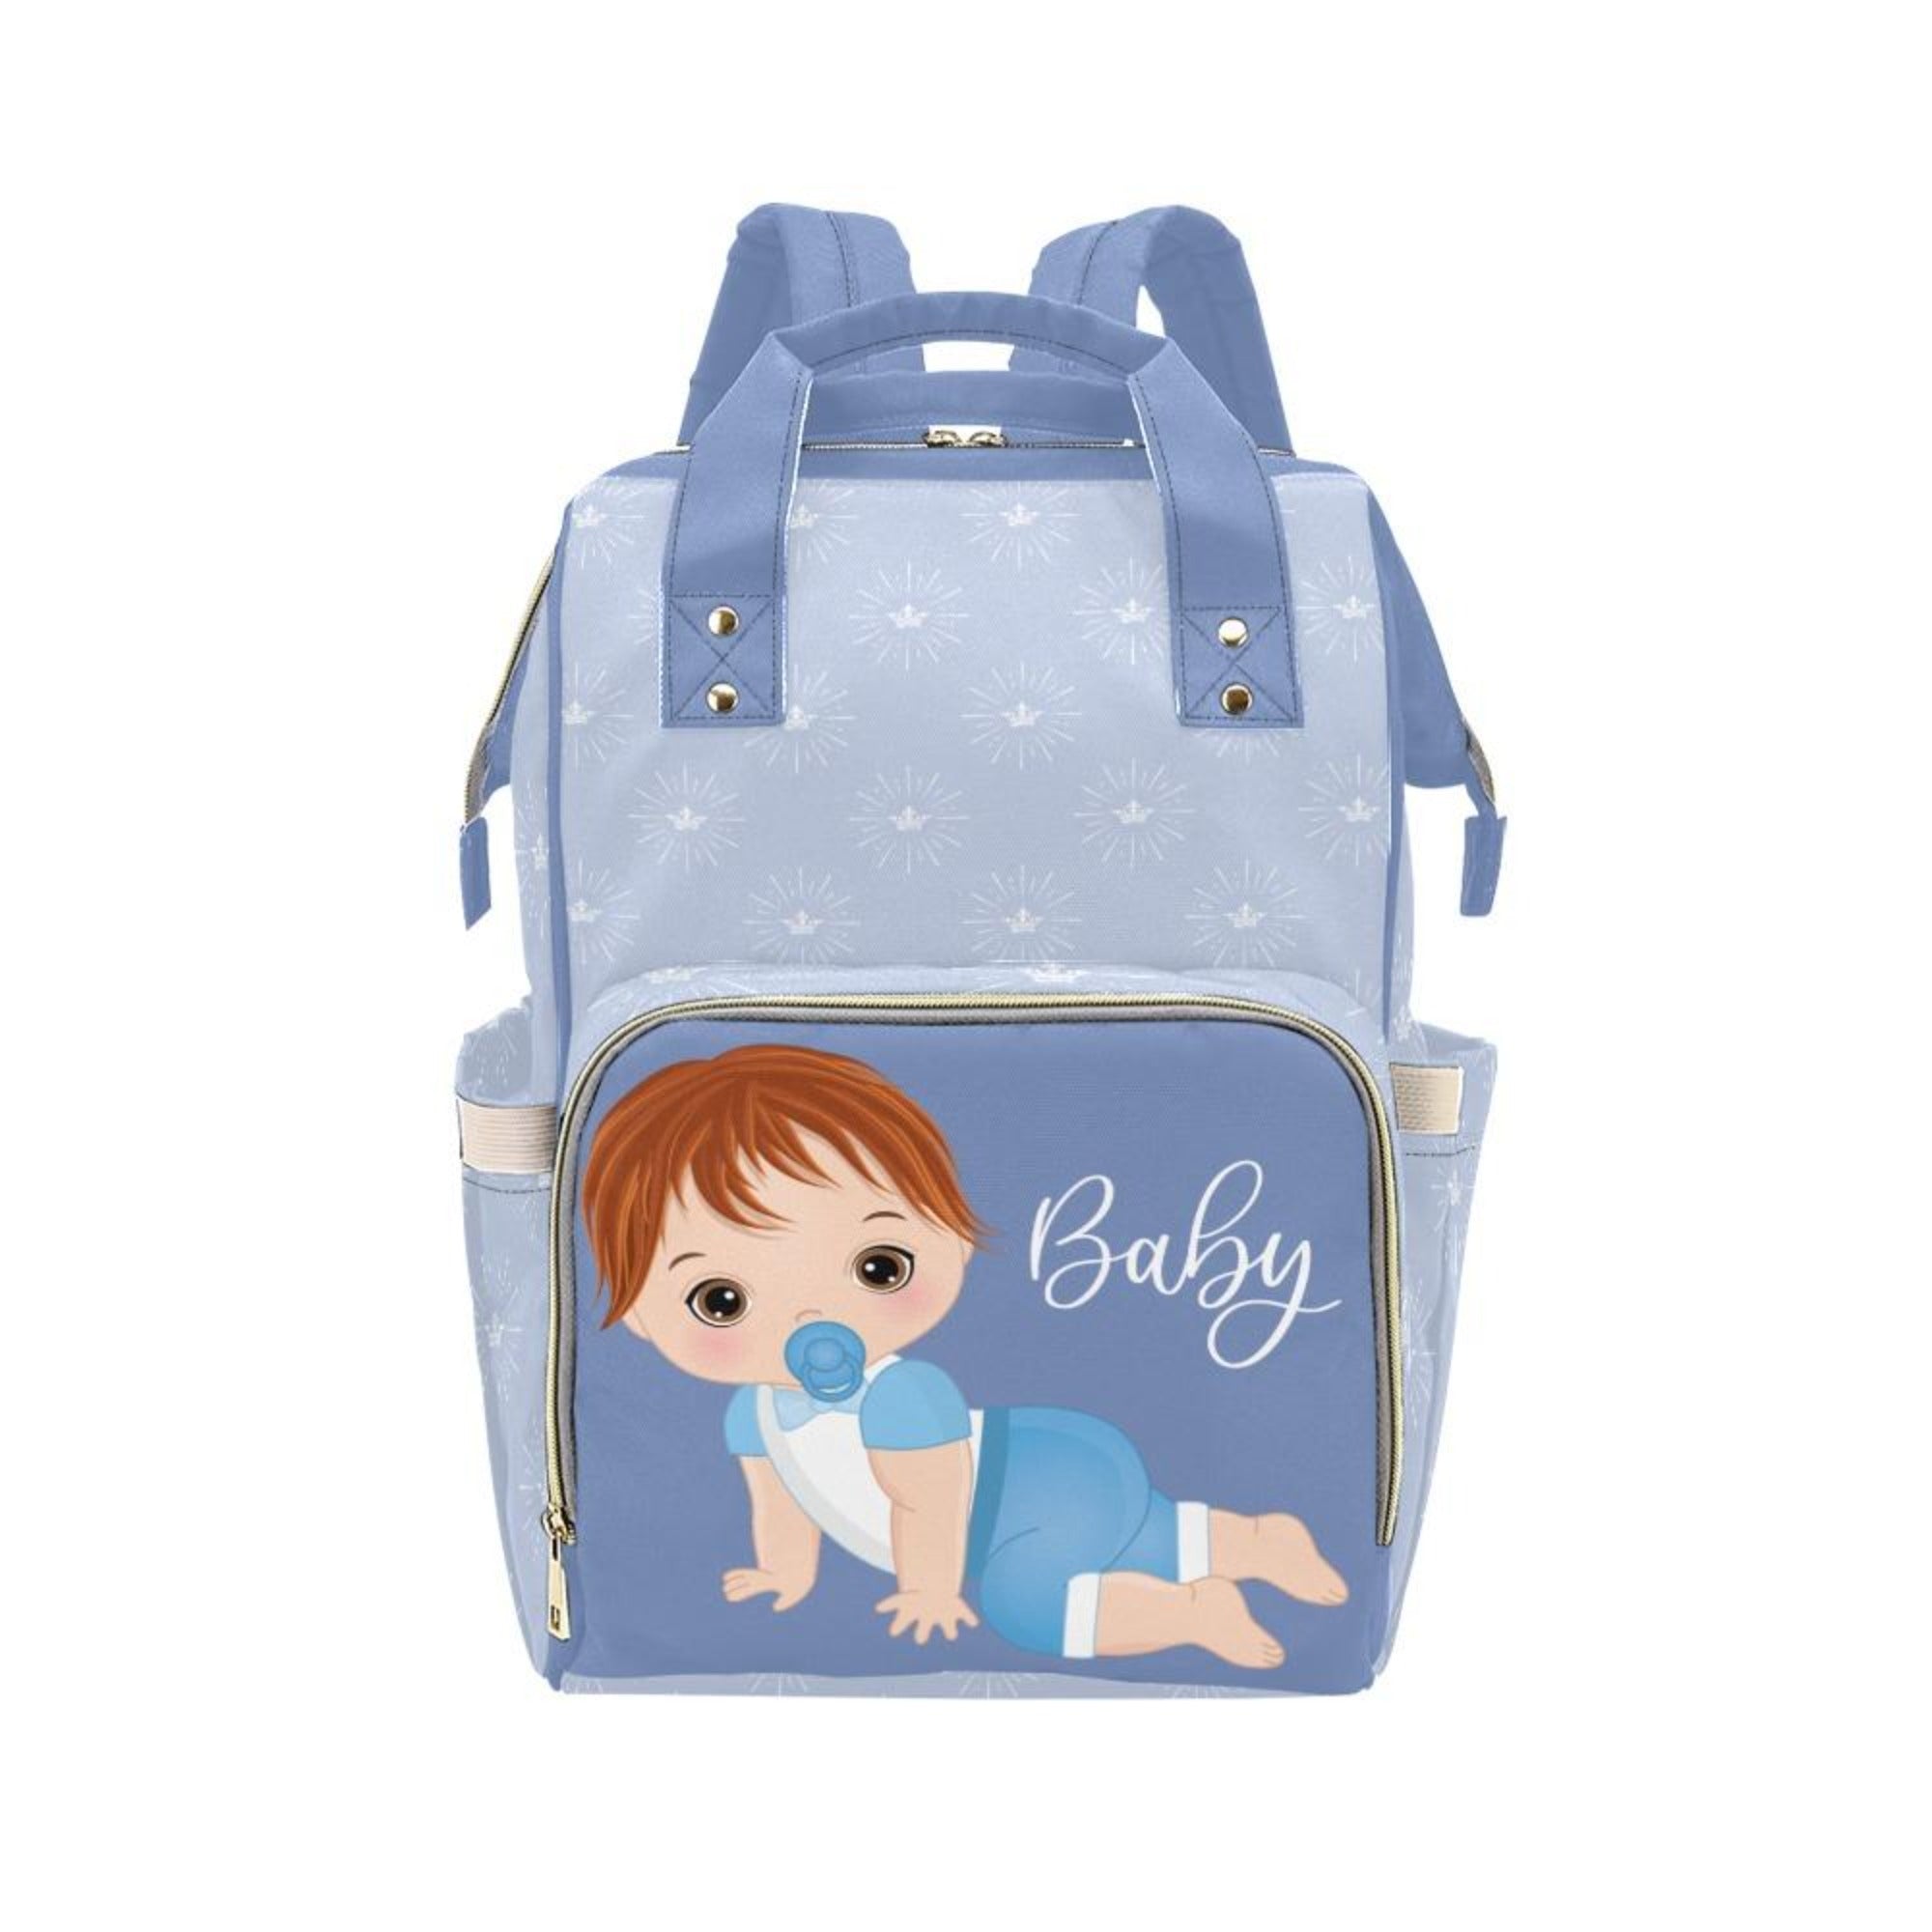 Custom Diaper Bag - Backpack Diaper Bag - Cute Redhead Baby Boy In Blue Diaper Bag